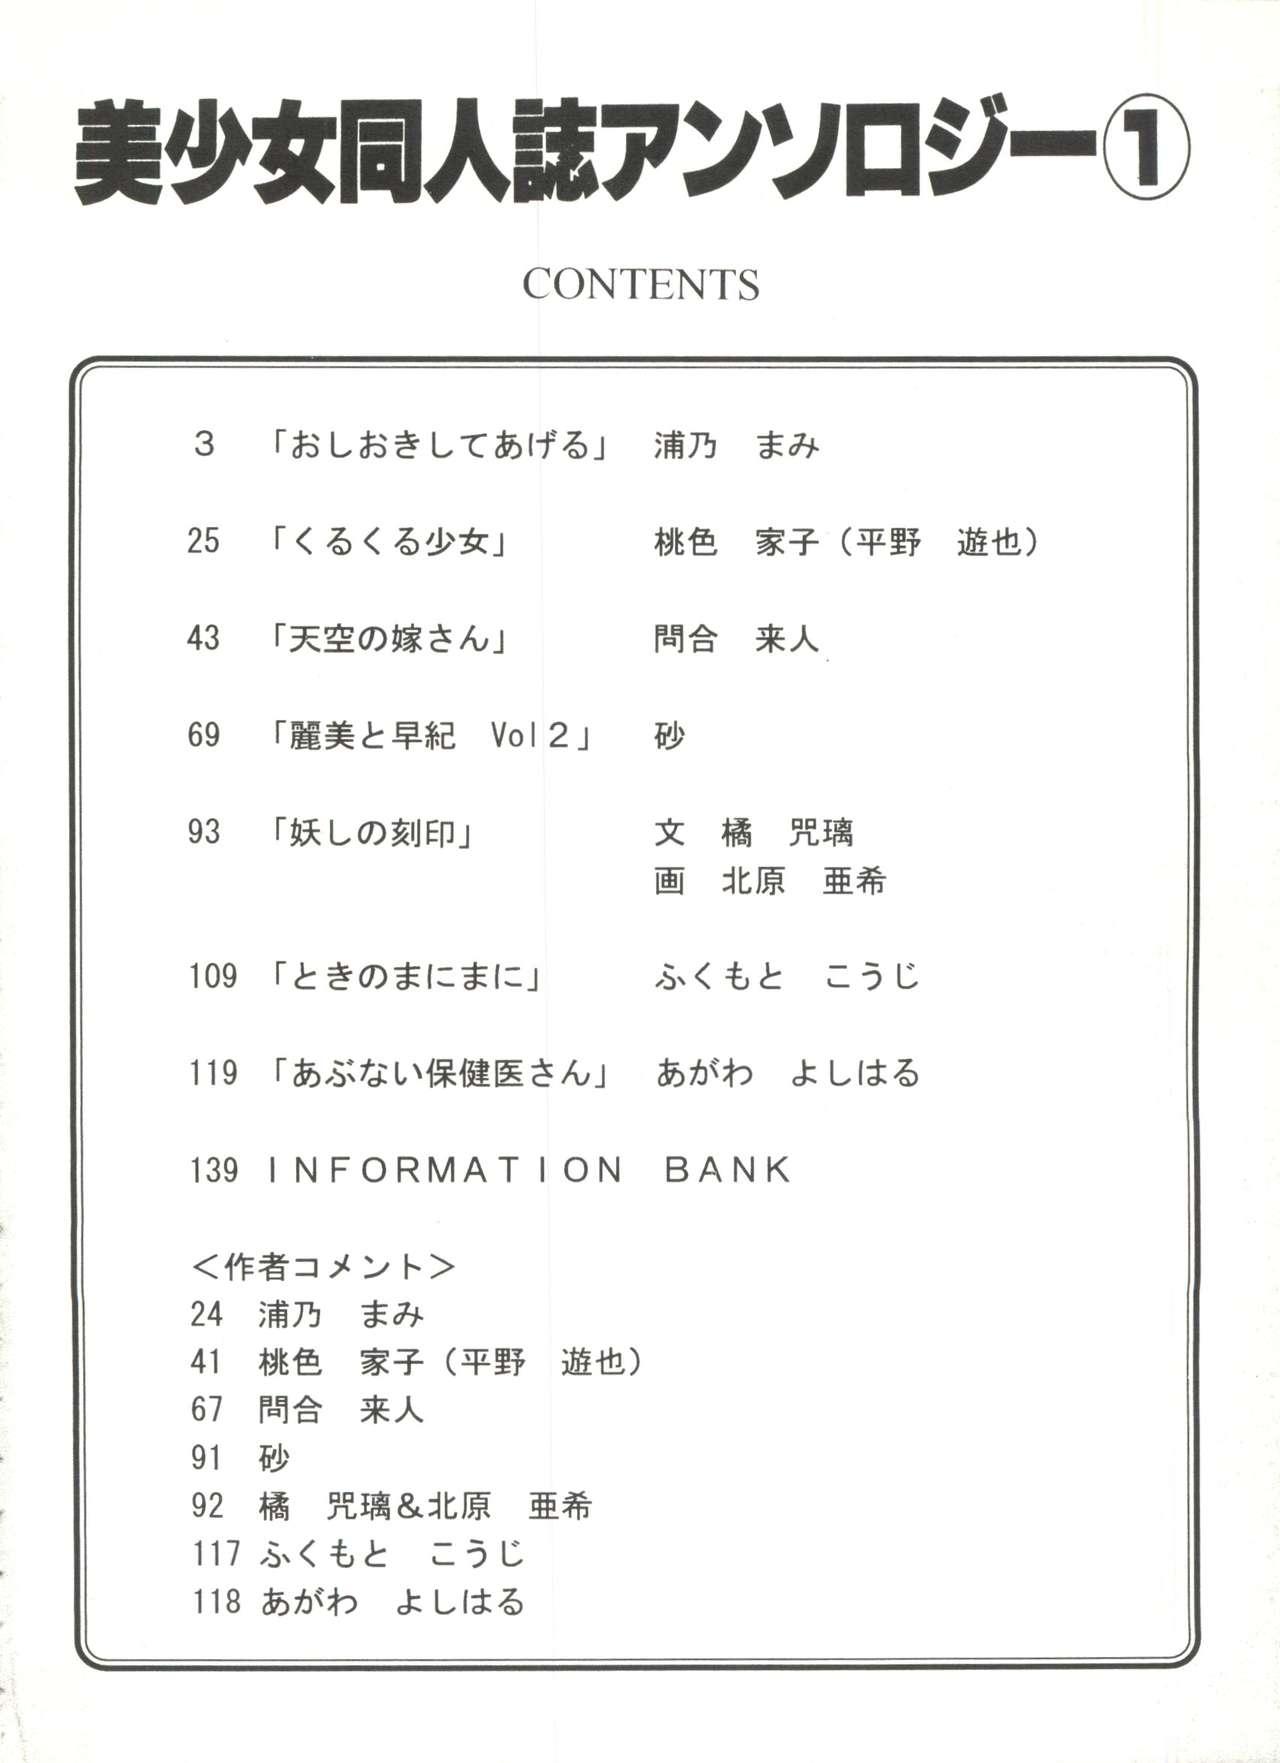 Bishoujo Doujinshi Anthology 1 3